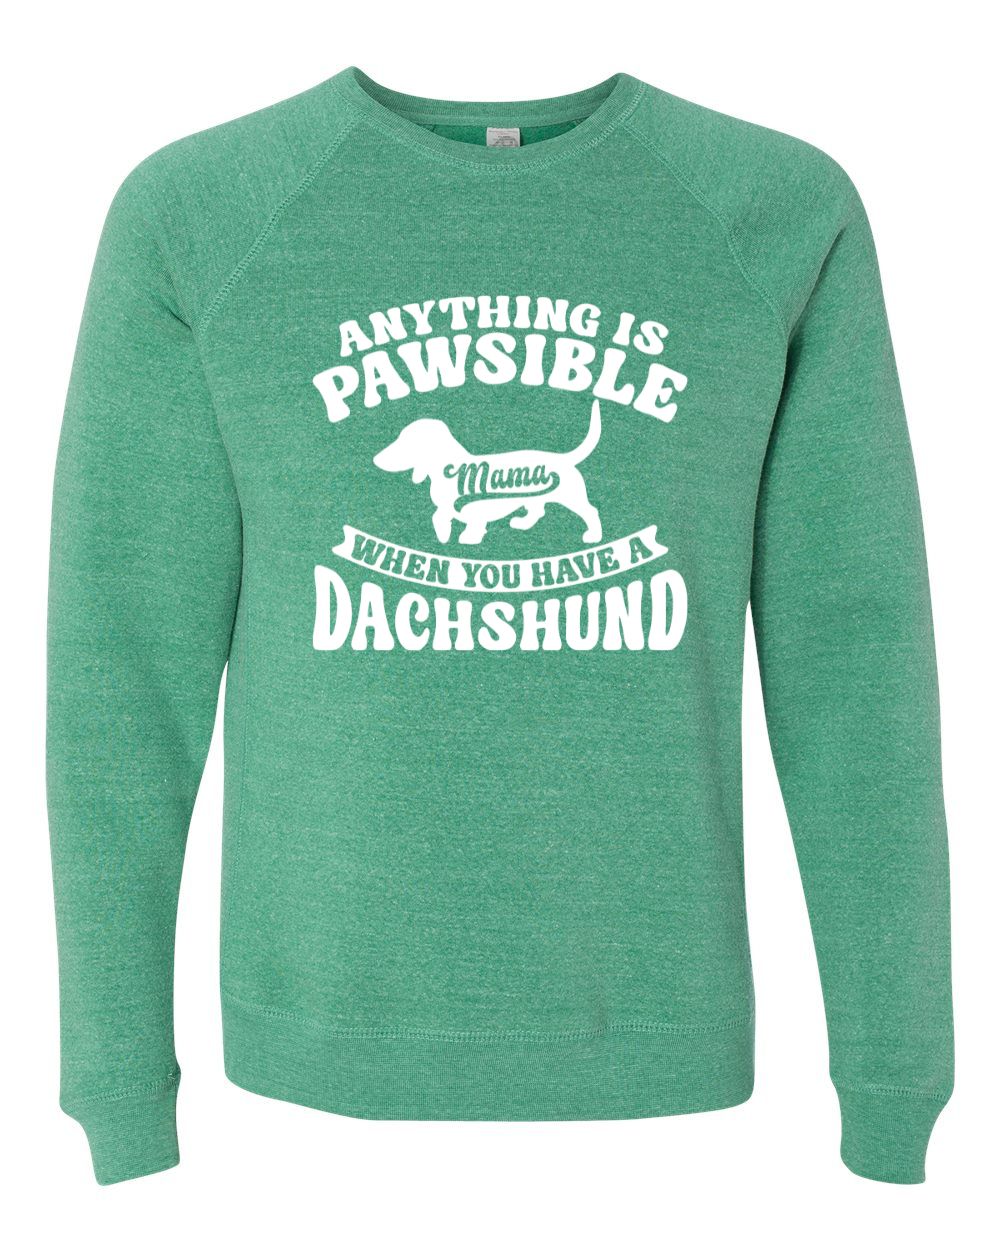 Anything Is Pawsible Sweatshirt